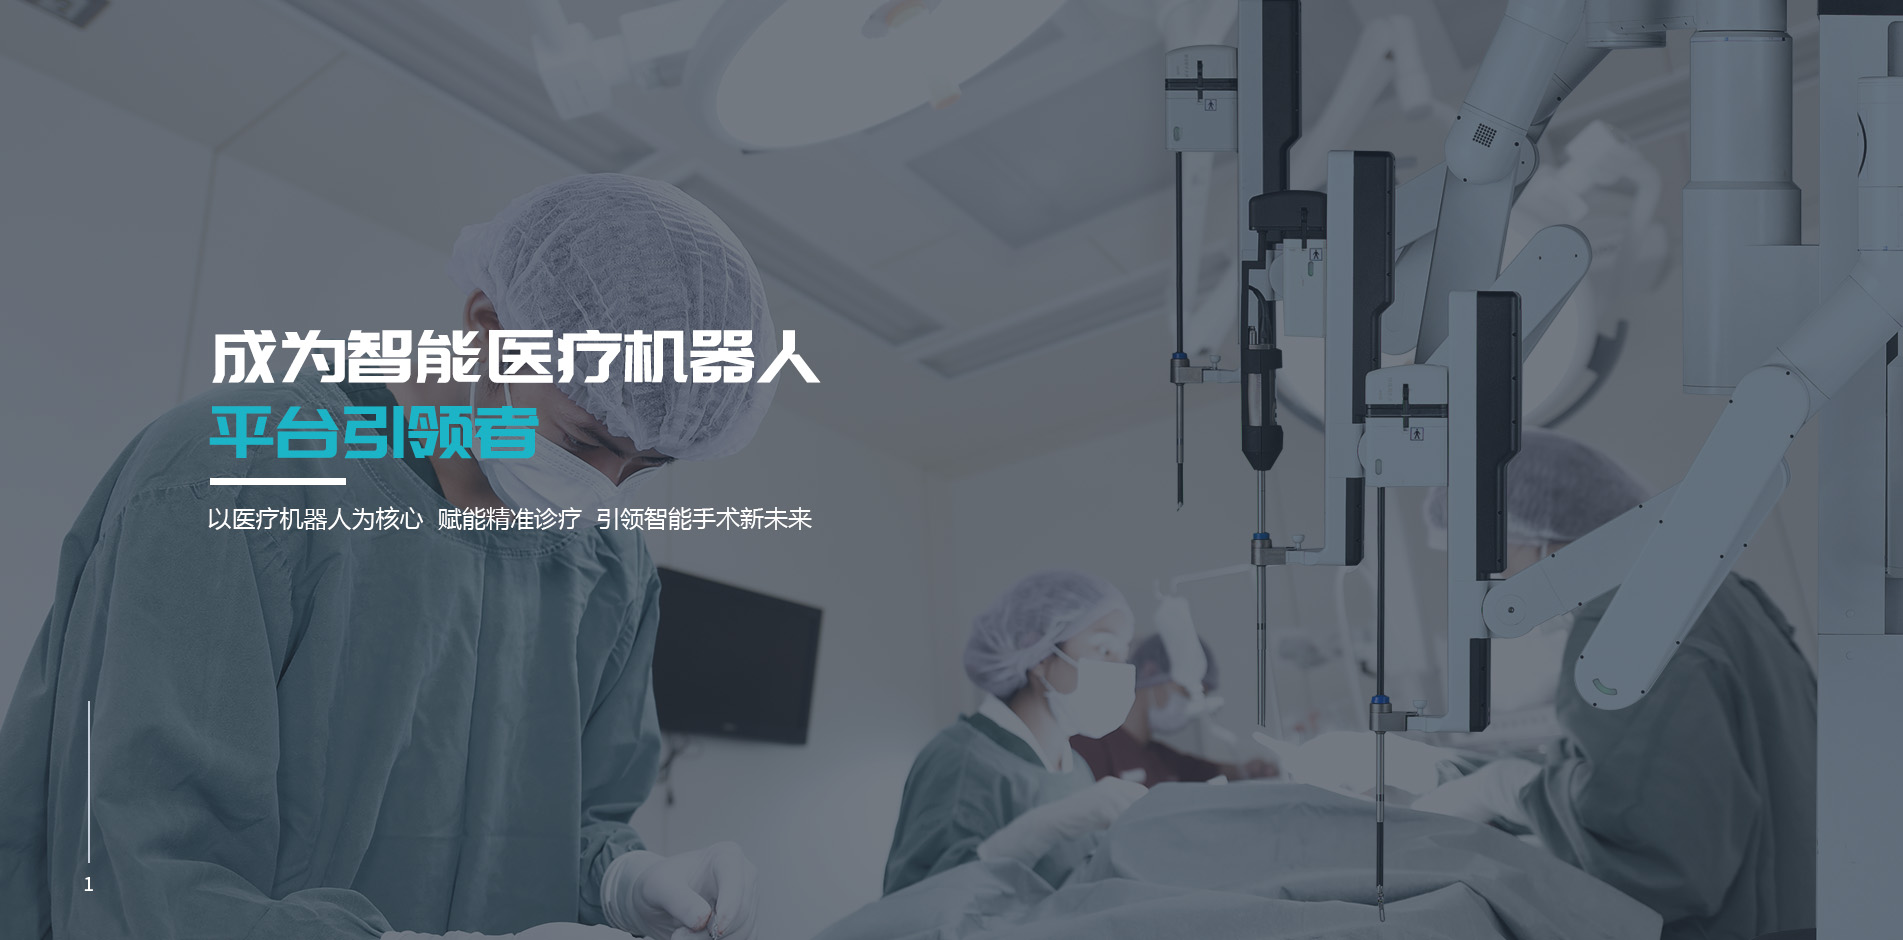 杭州唯精医疗机器人有限公司